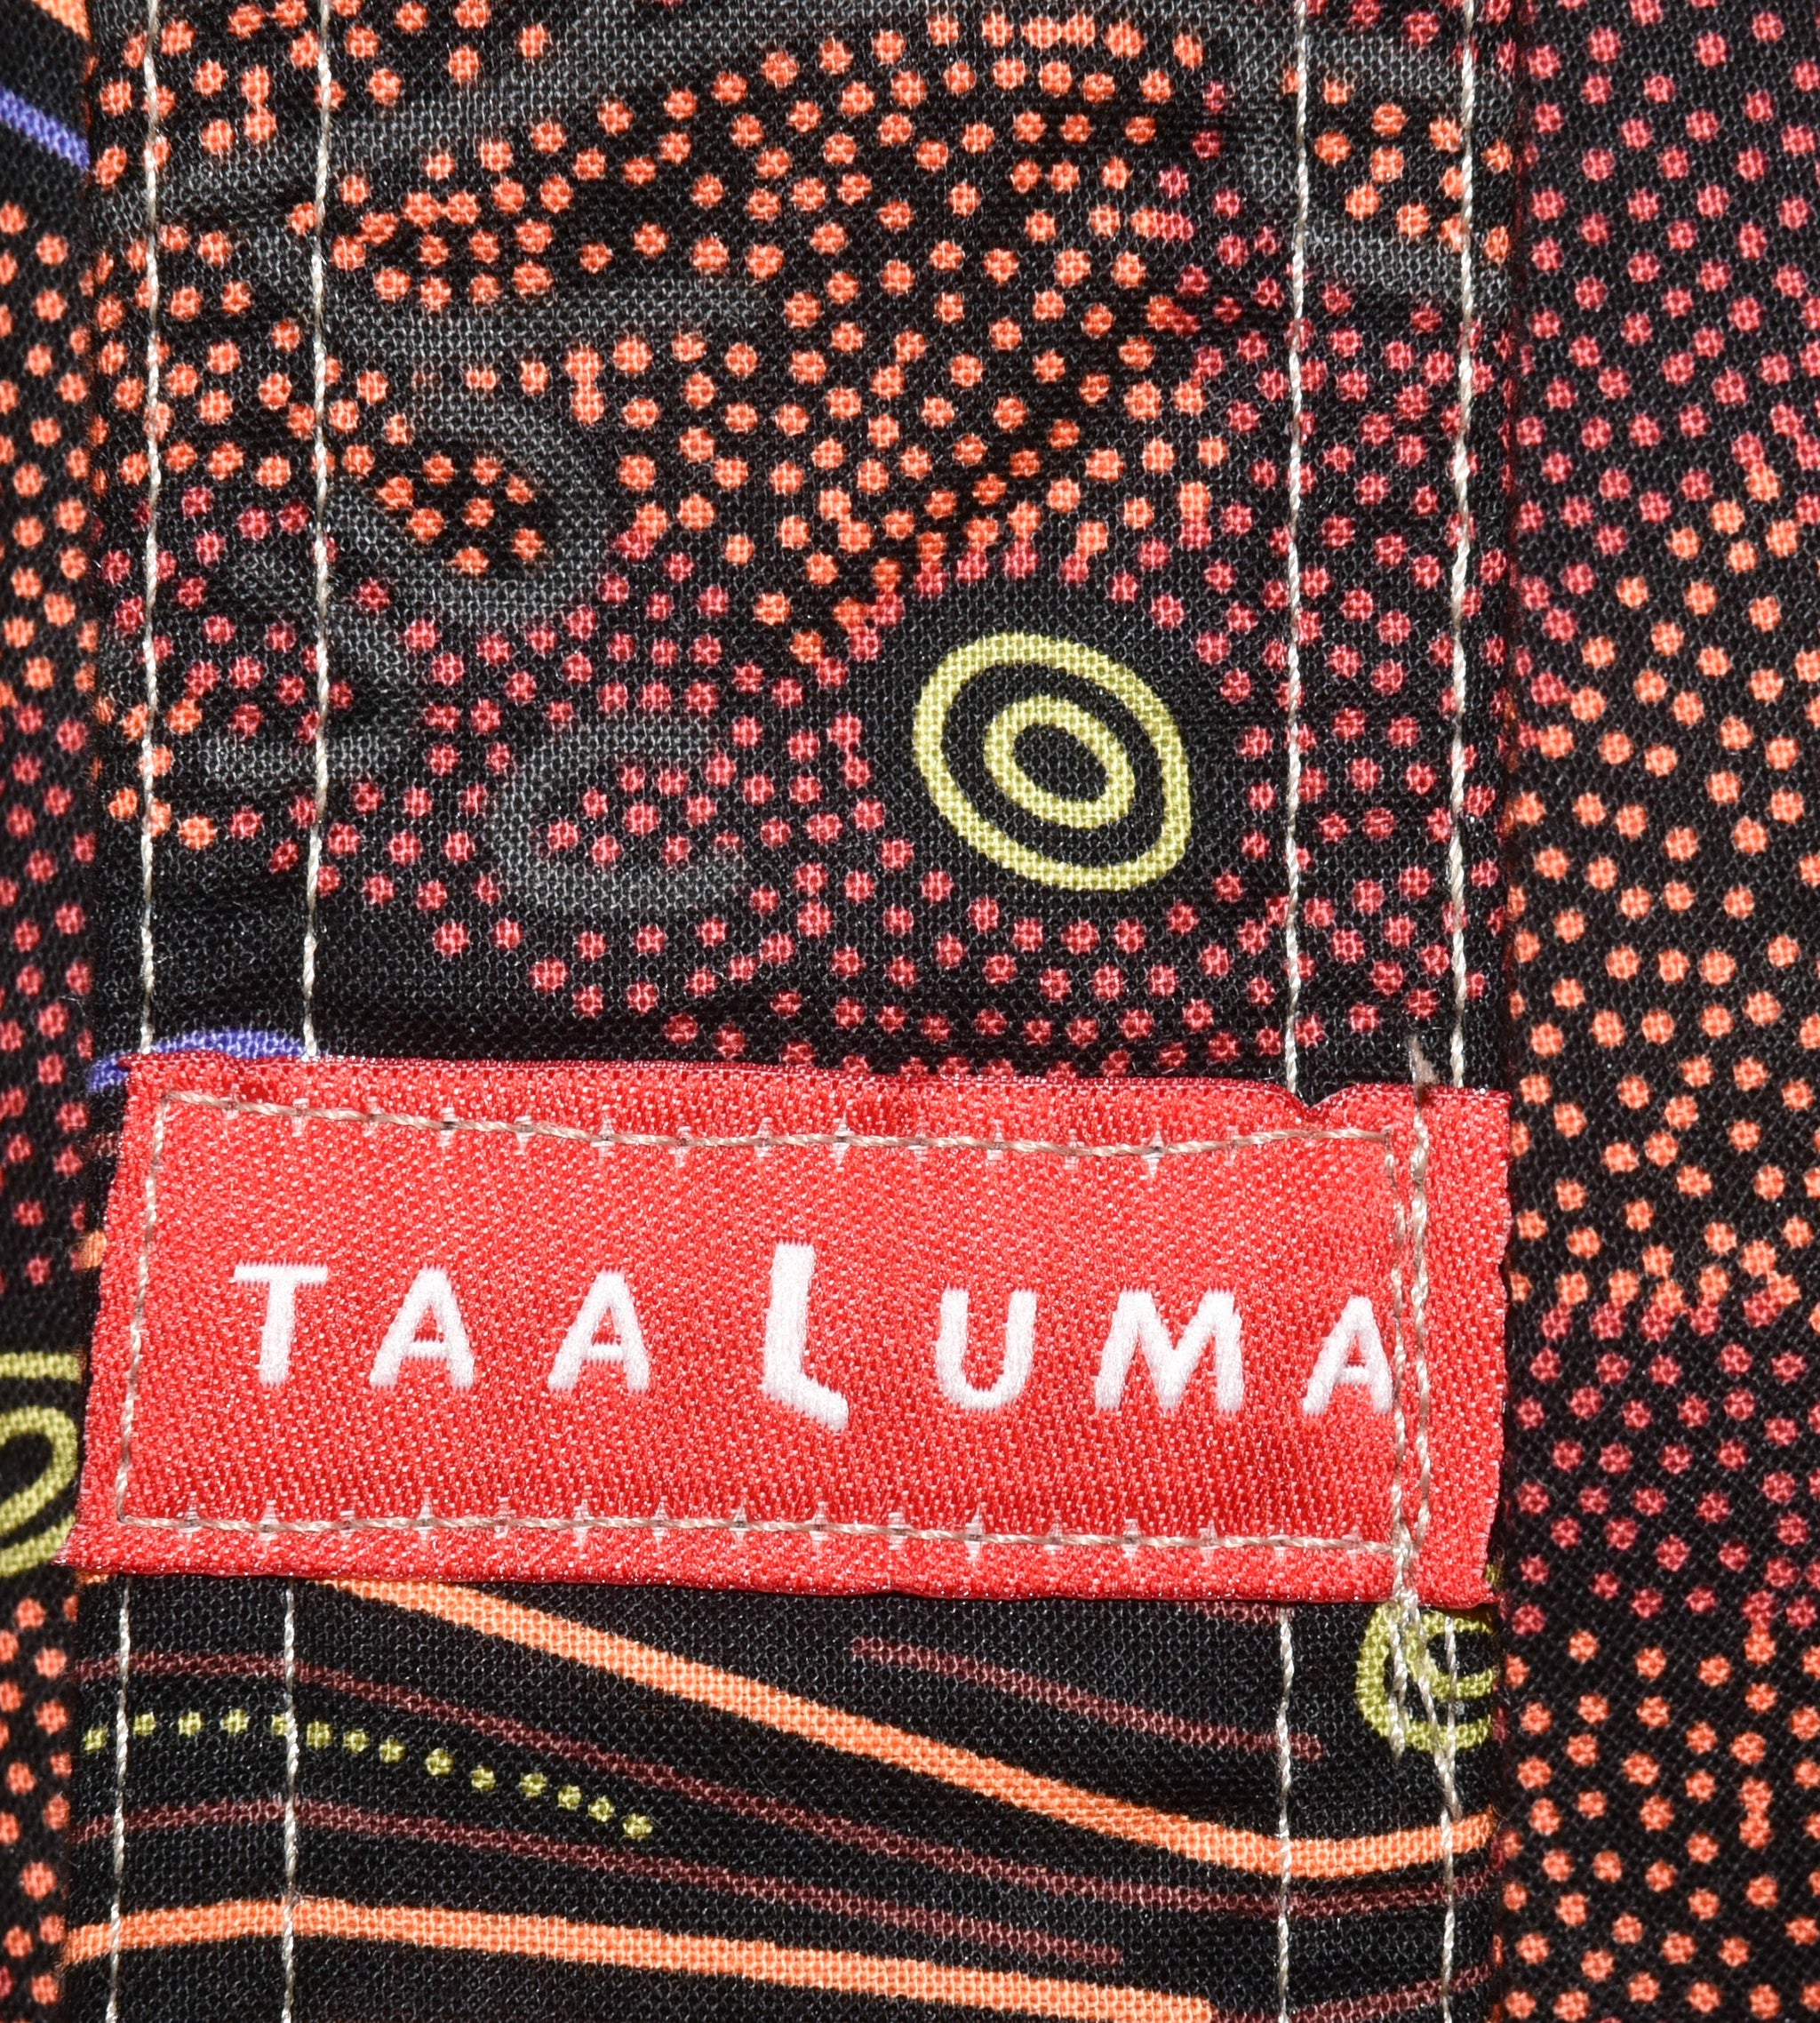 Australia Tote (Limited) - Taaluma Totes